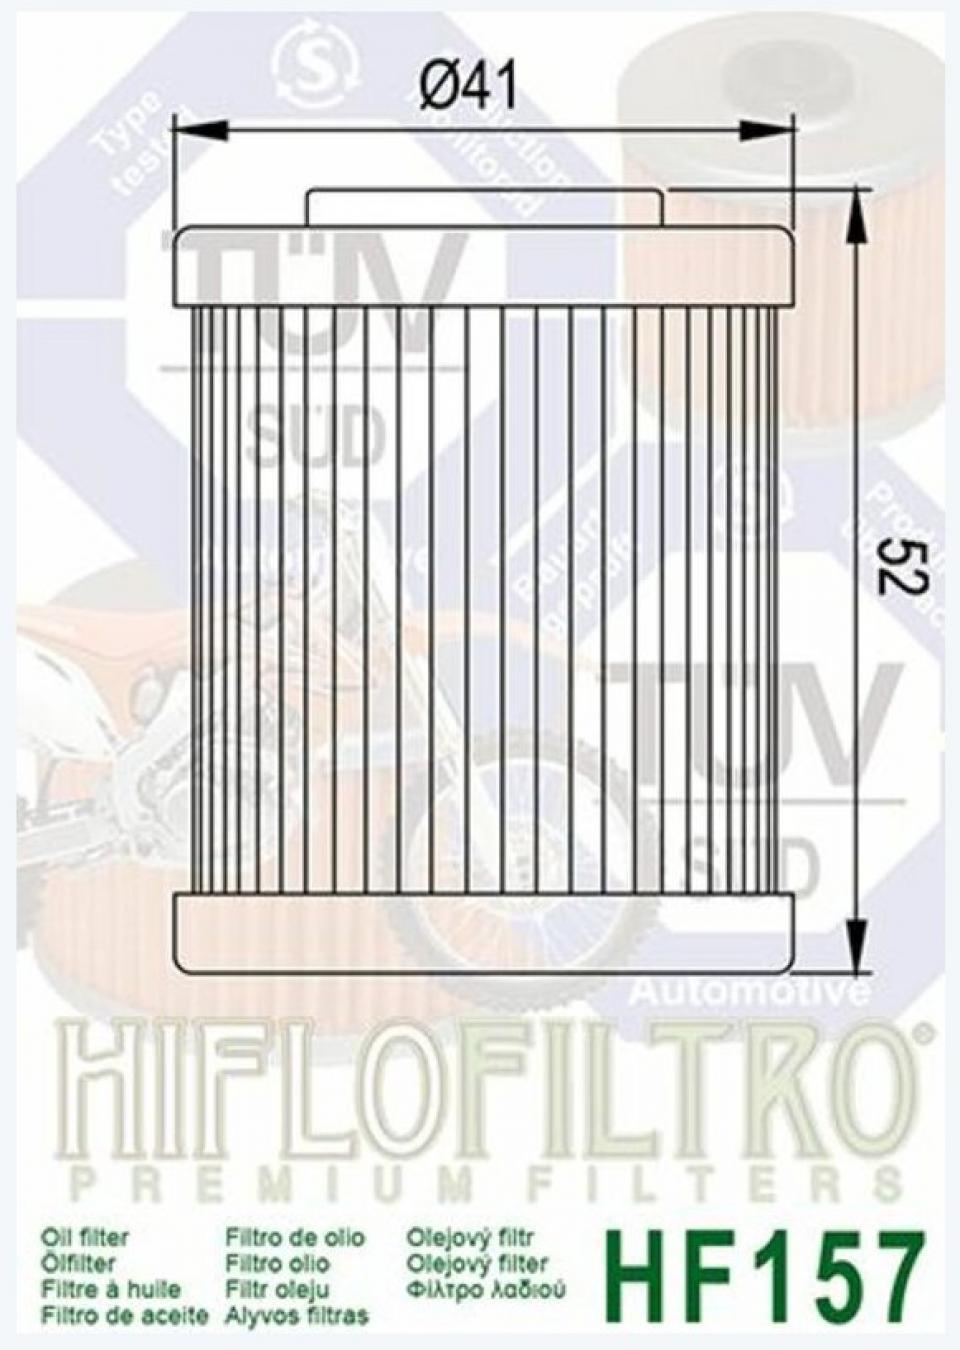 Filtre à huile Hiflo Filtro pour Moto KTM 625 Sxc Lc4 2003-2006 Neuf